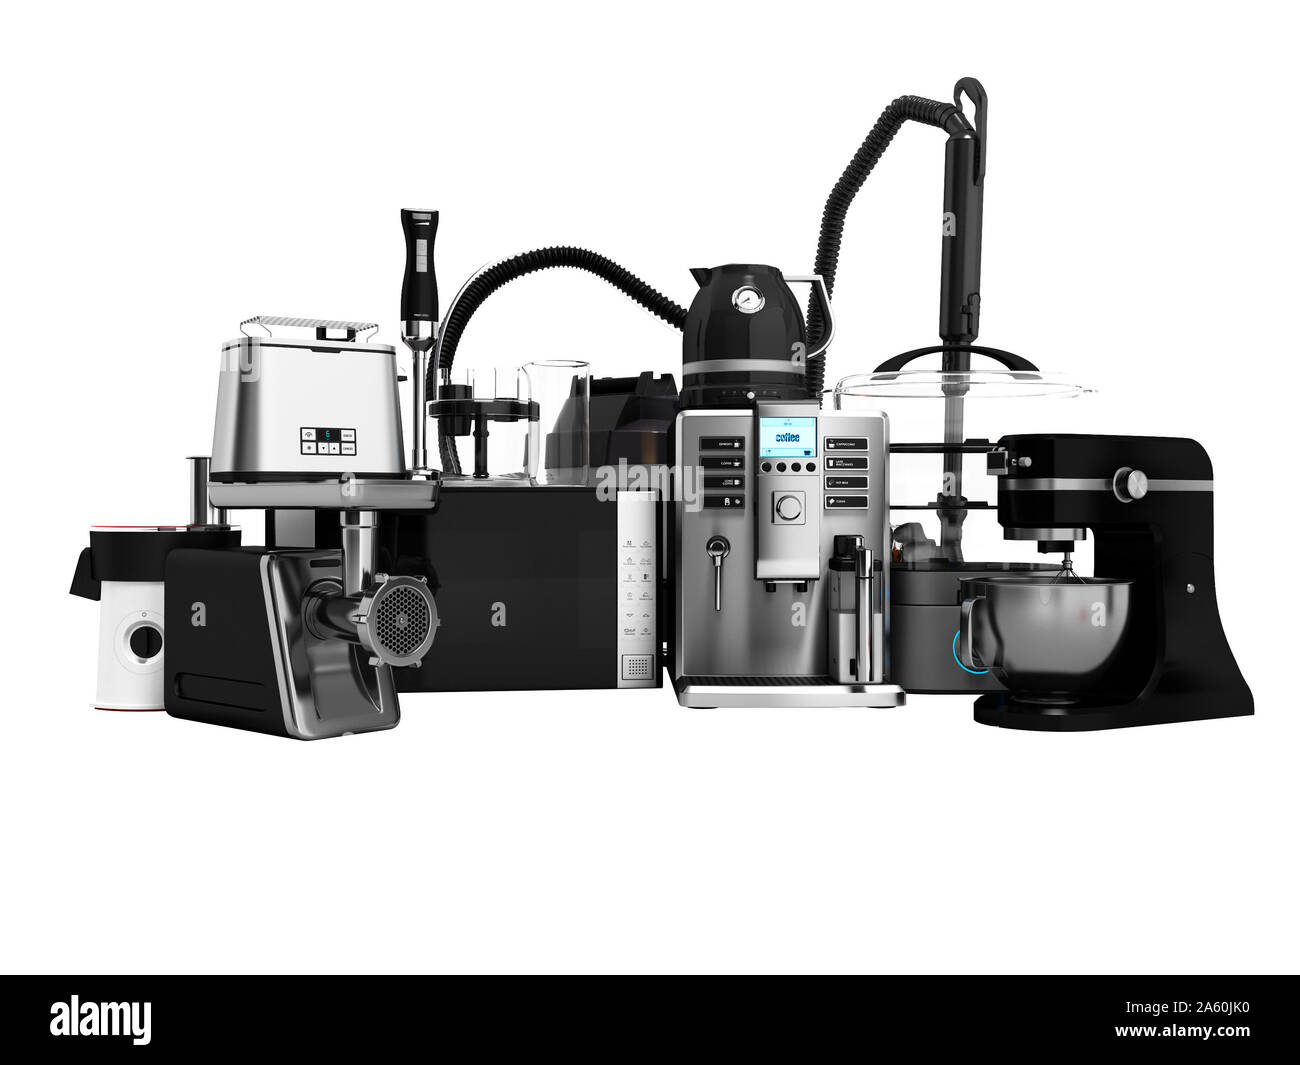 https://c8.alamy.com/comp/2A60JK0/household-appliances-group-of-vacuum-cleaners-microwave-coffee-maker-steam-kettle-toaster-meat-grinder-juicer-blender-toaster-steamer-sale-3d-render-o-2A60JK0.jpg